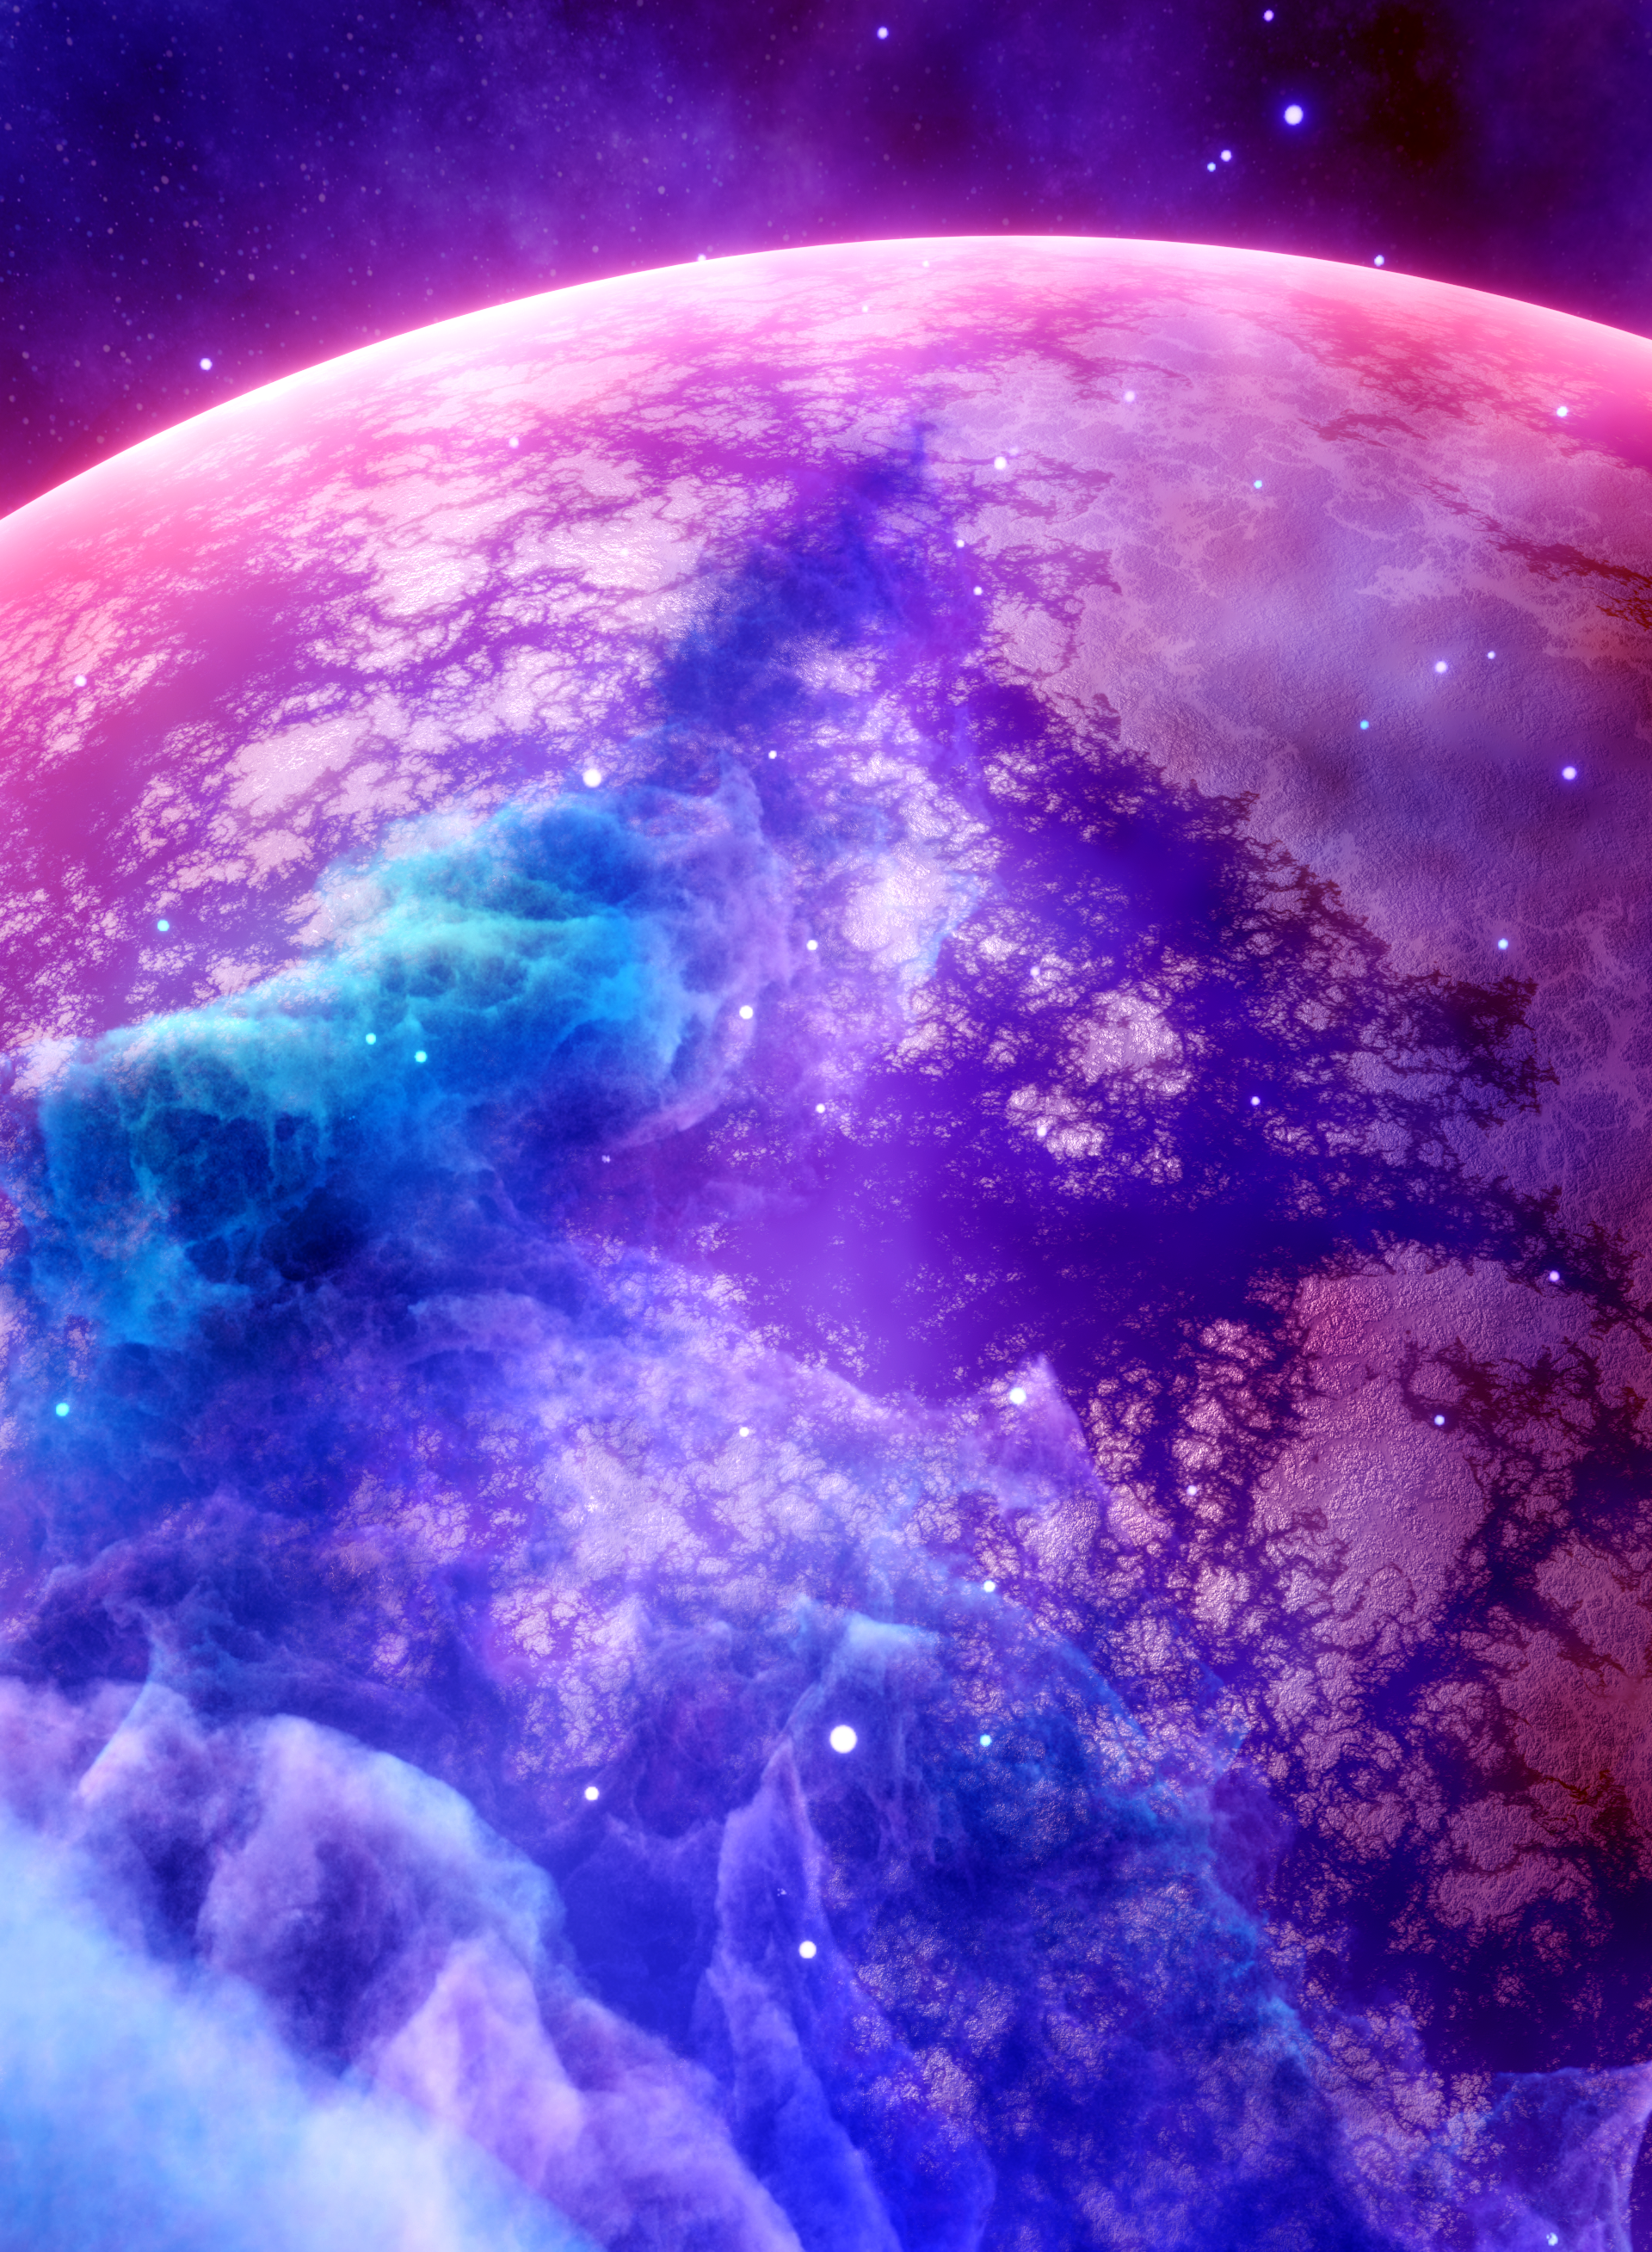 Nft 644-Wazir-Nebula